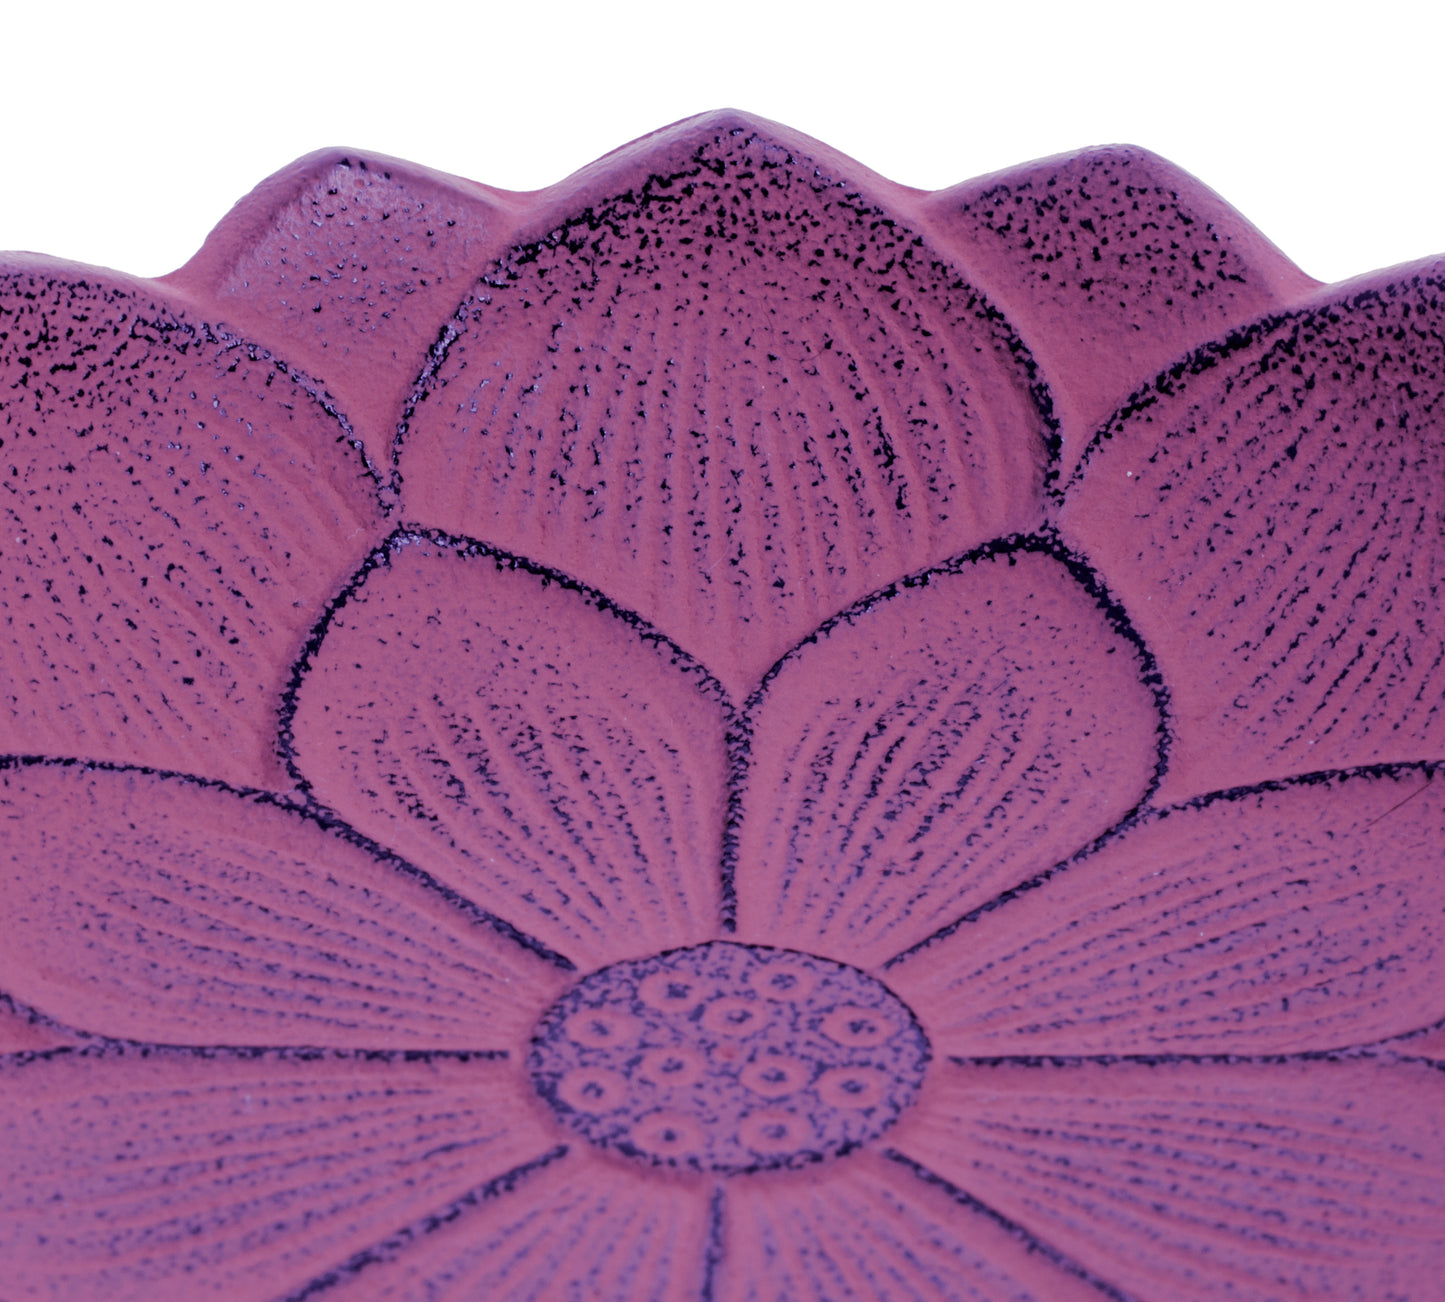 Iwachu Incense Burner - Purple Lotus Flower